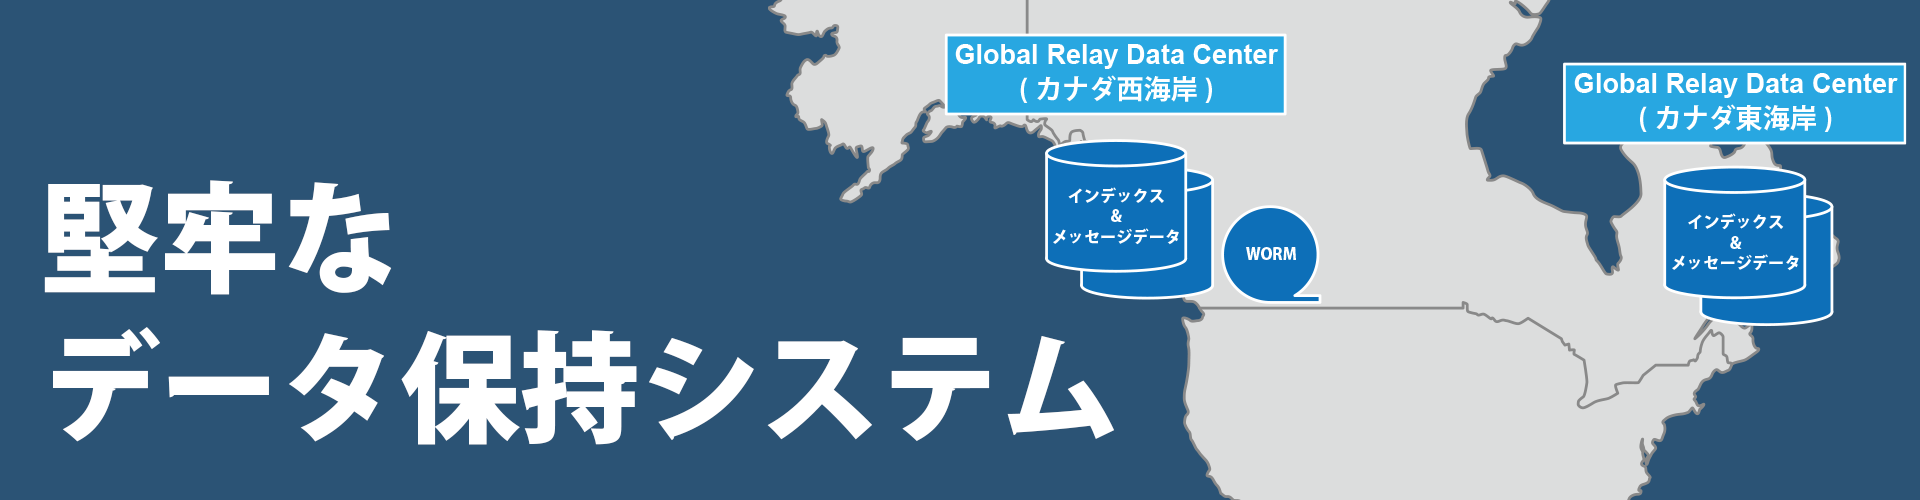 Global Relay Data Center